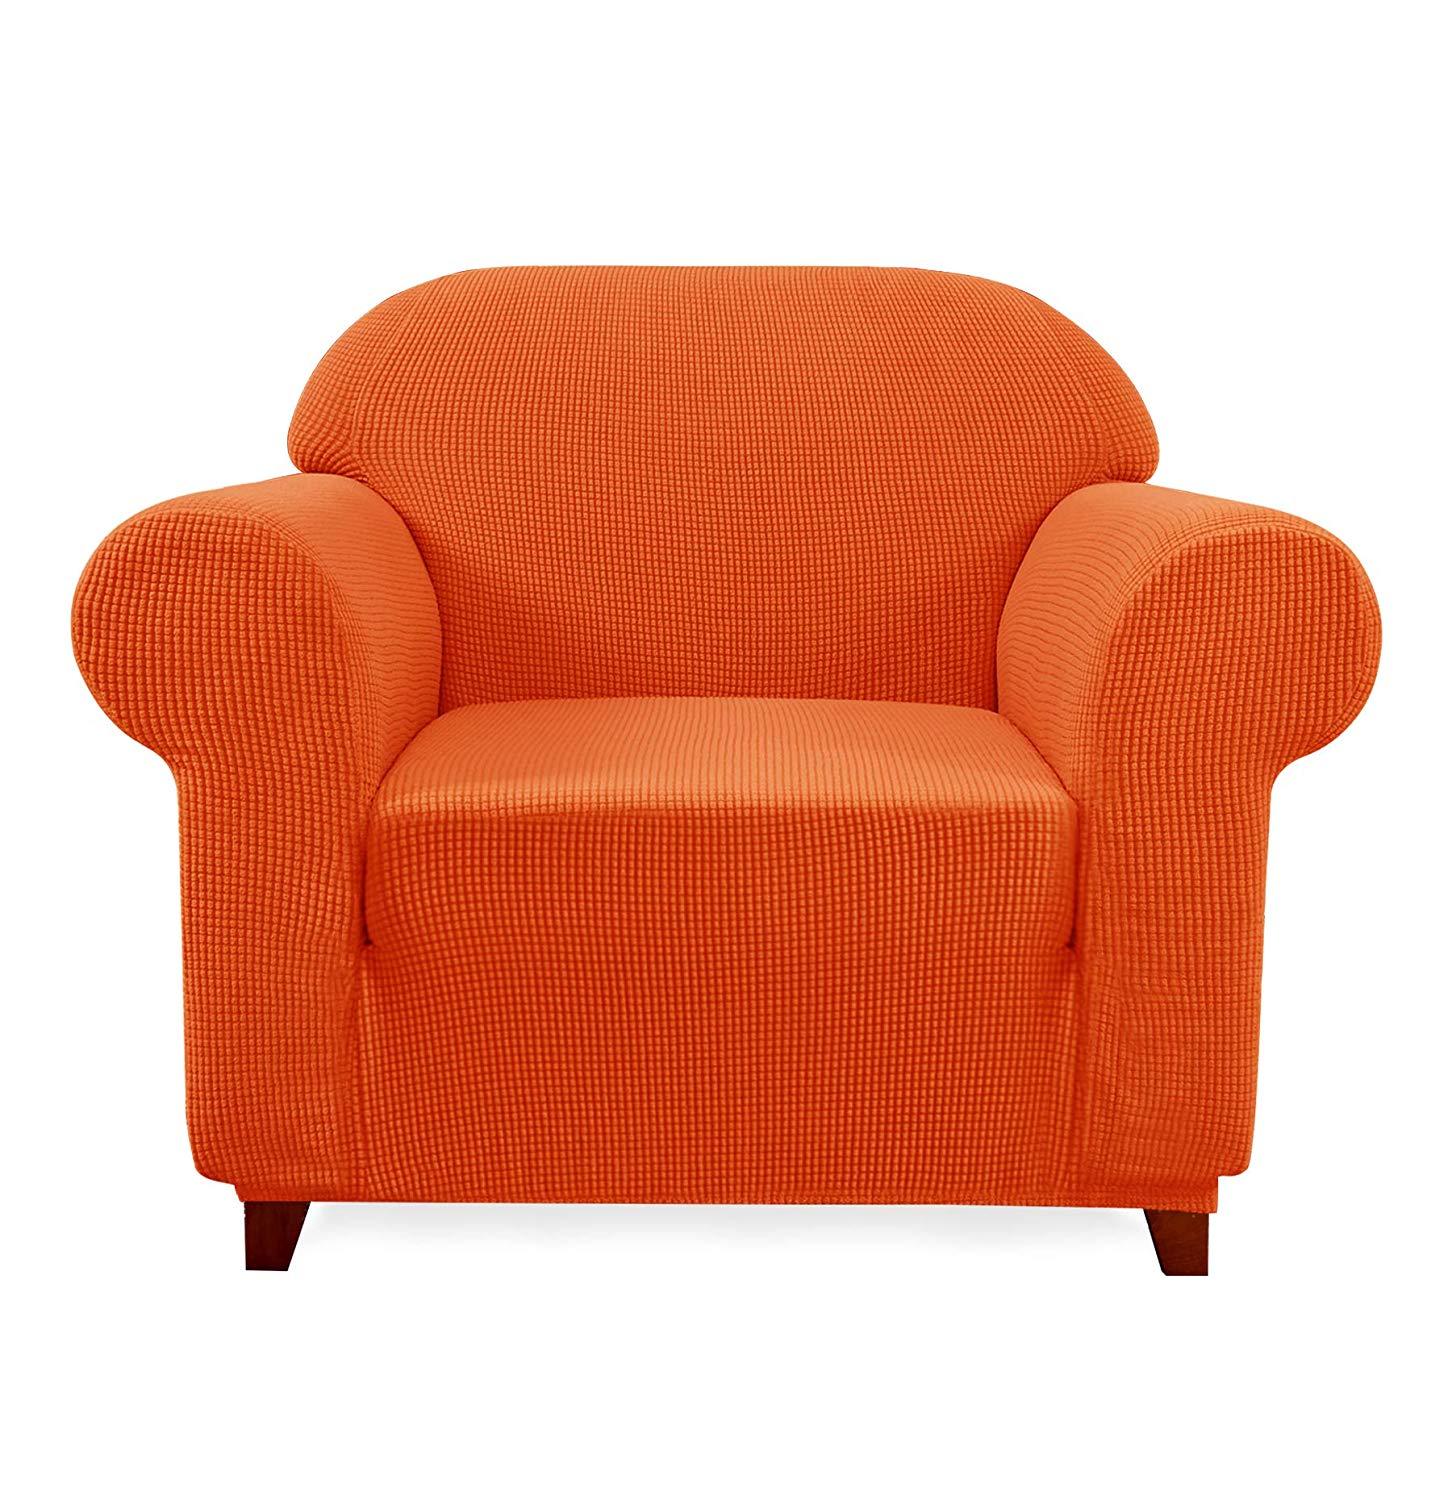 Chair / Orange Plaid